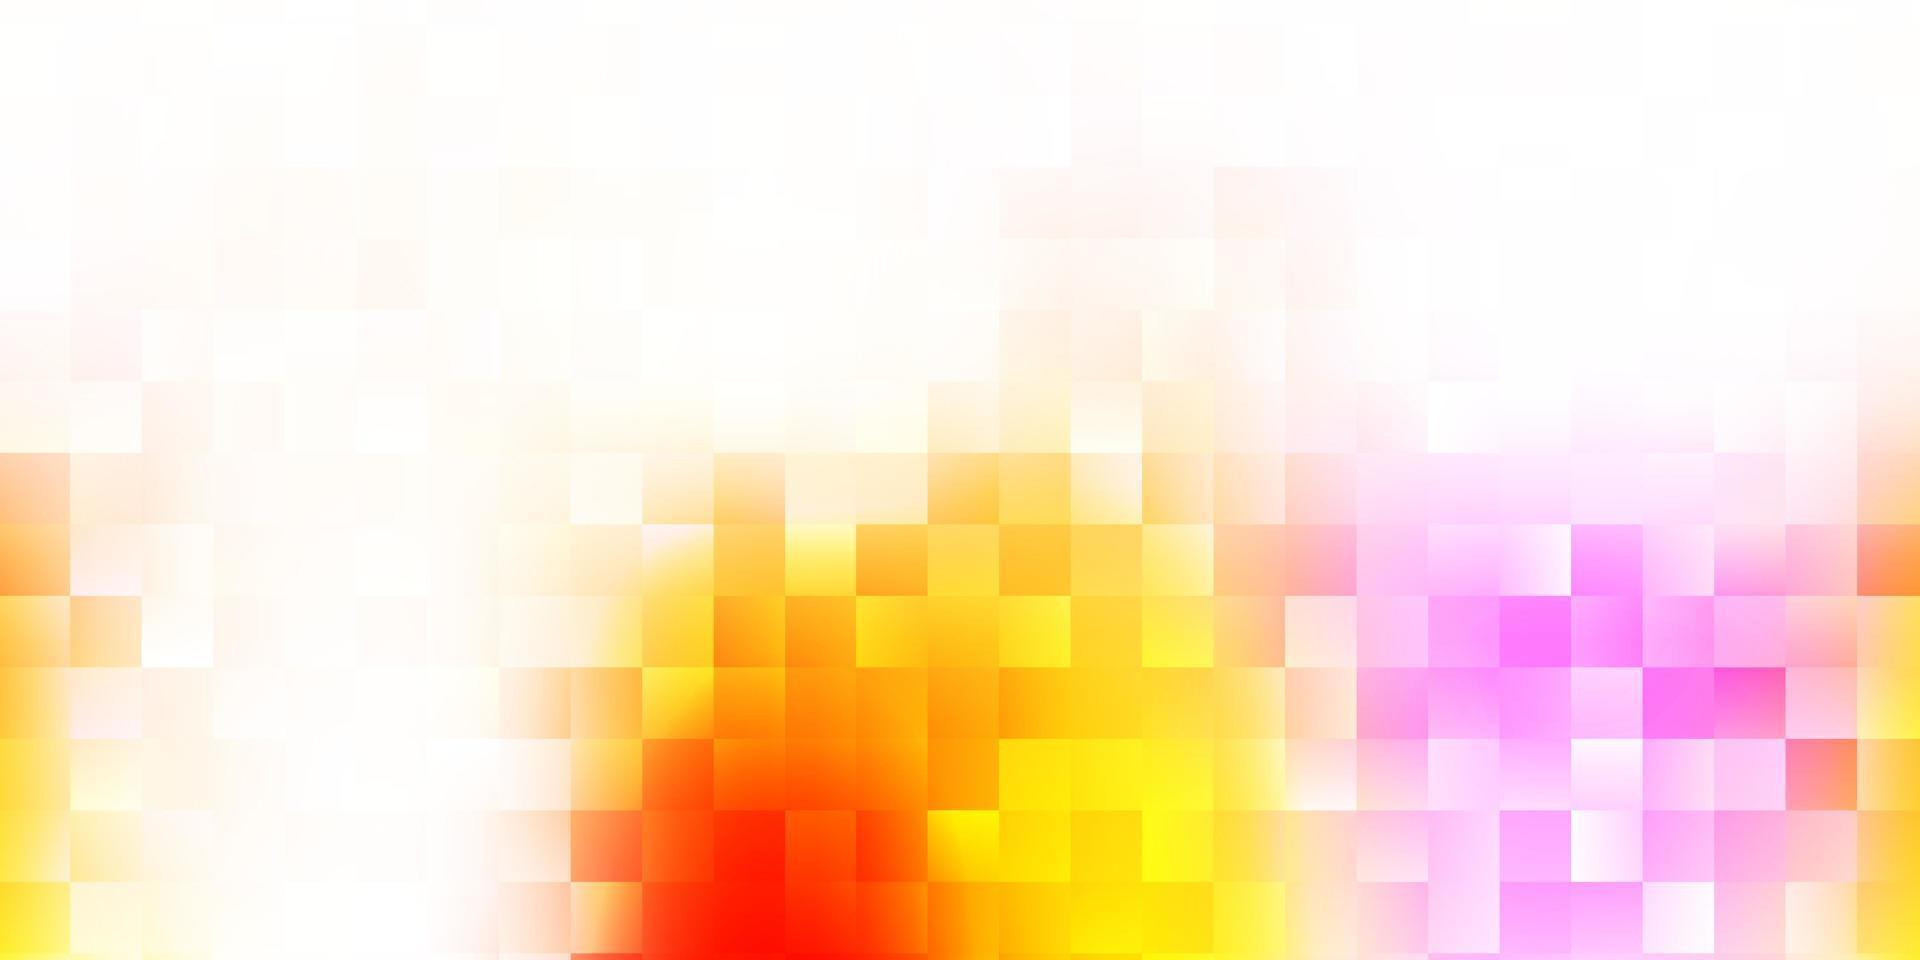 ljusrosa, gul vektormall med abstrakta former. vektor